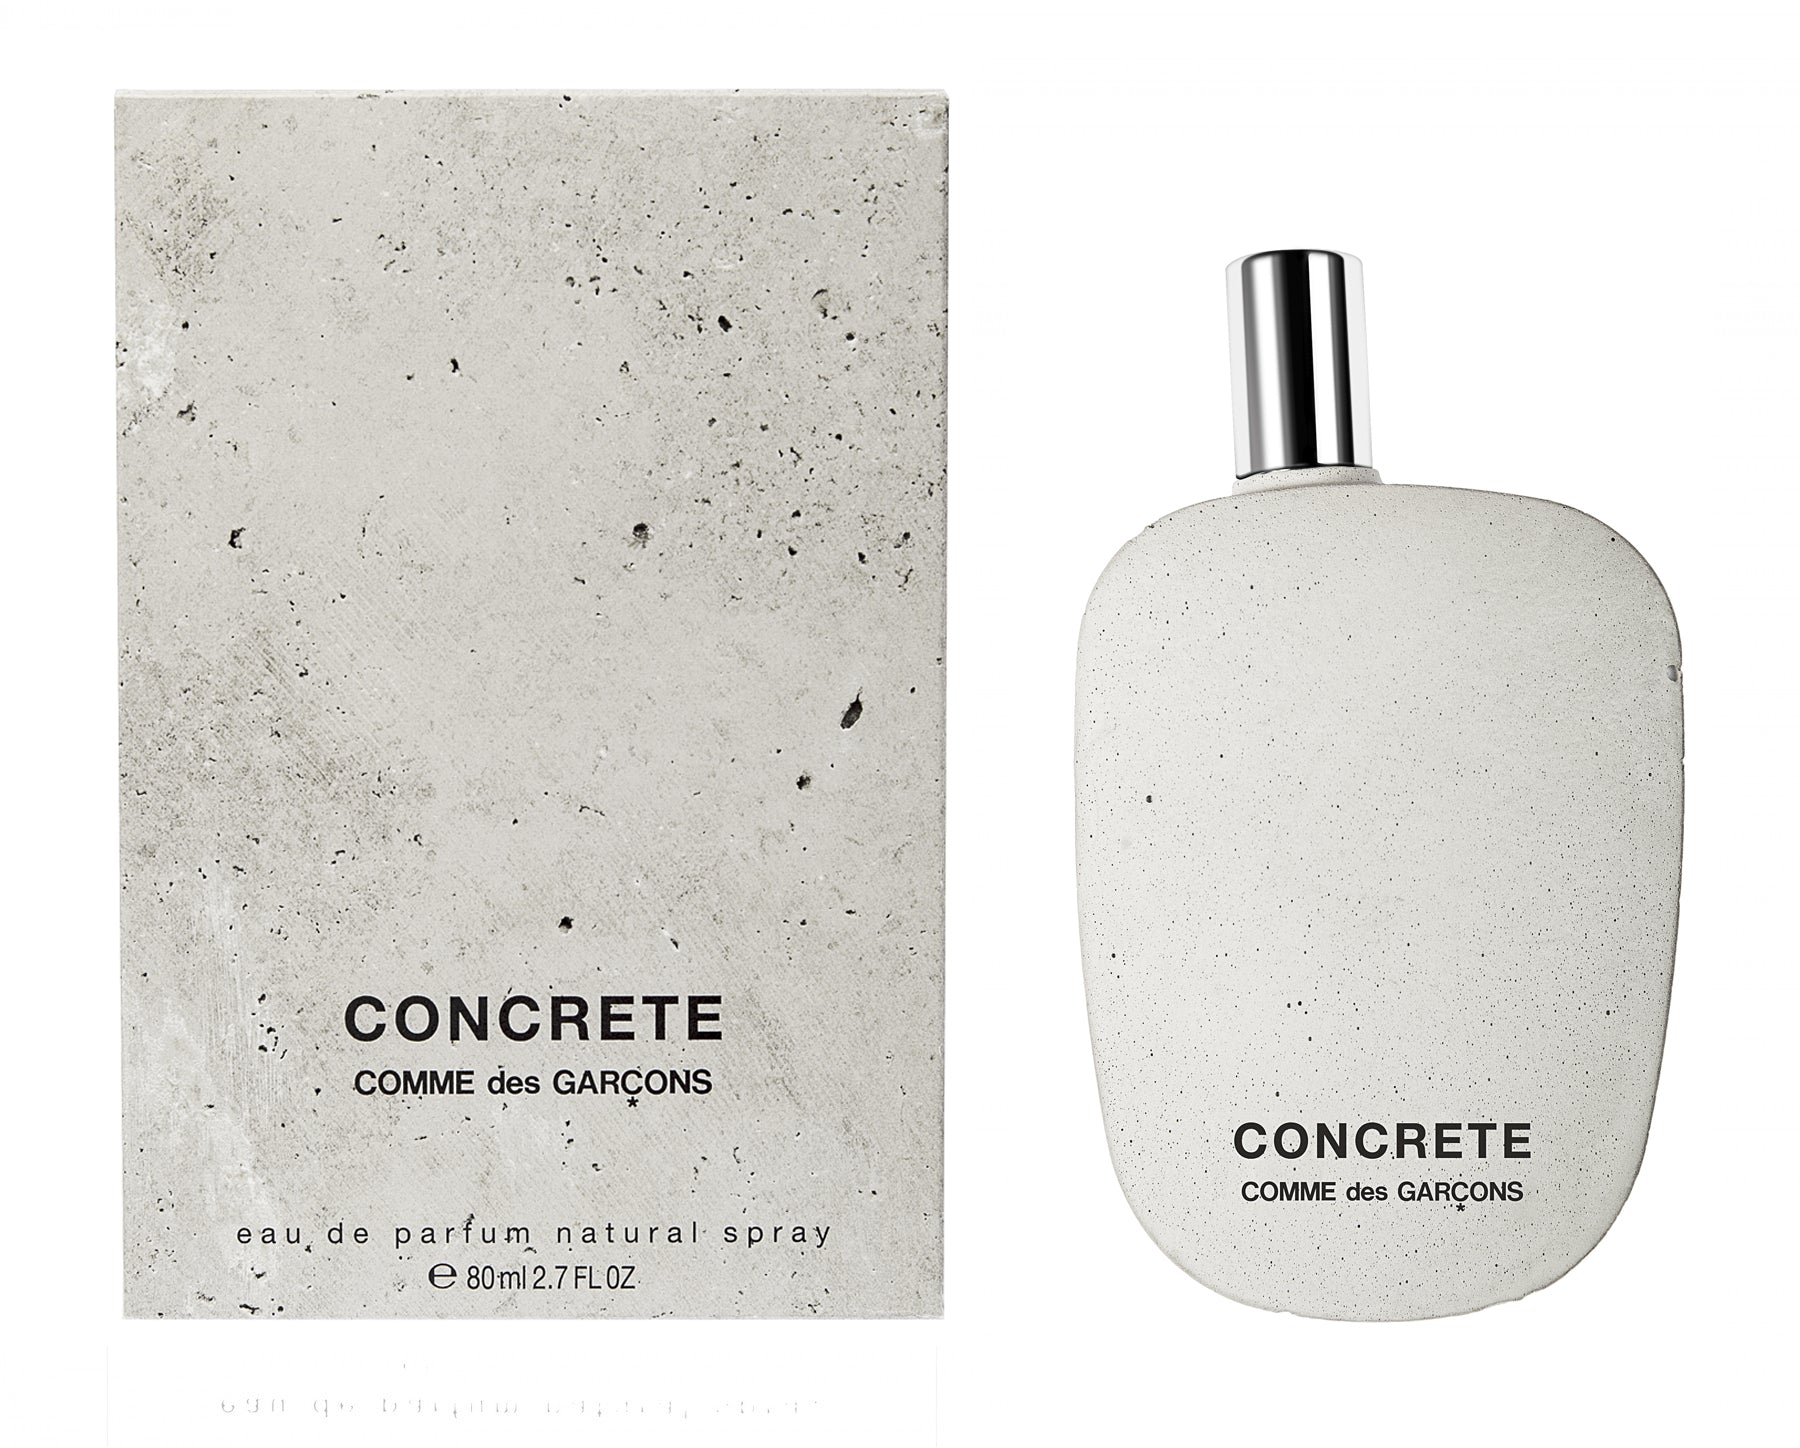 CDG Parfum - Concrete Eau de Parfum - (80ml natural spray) view 2